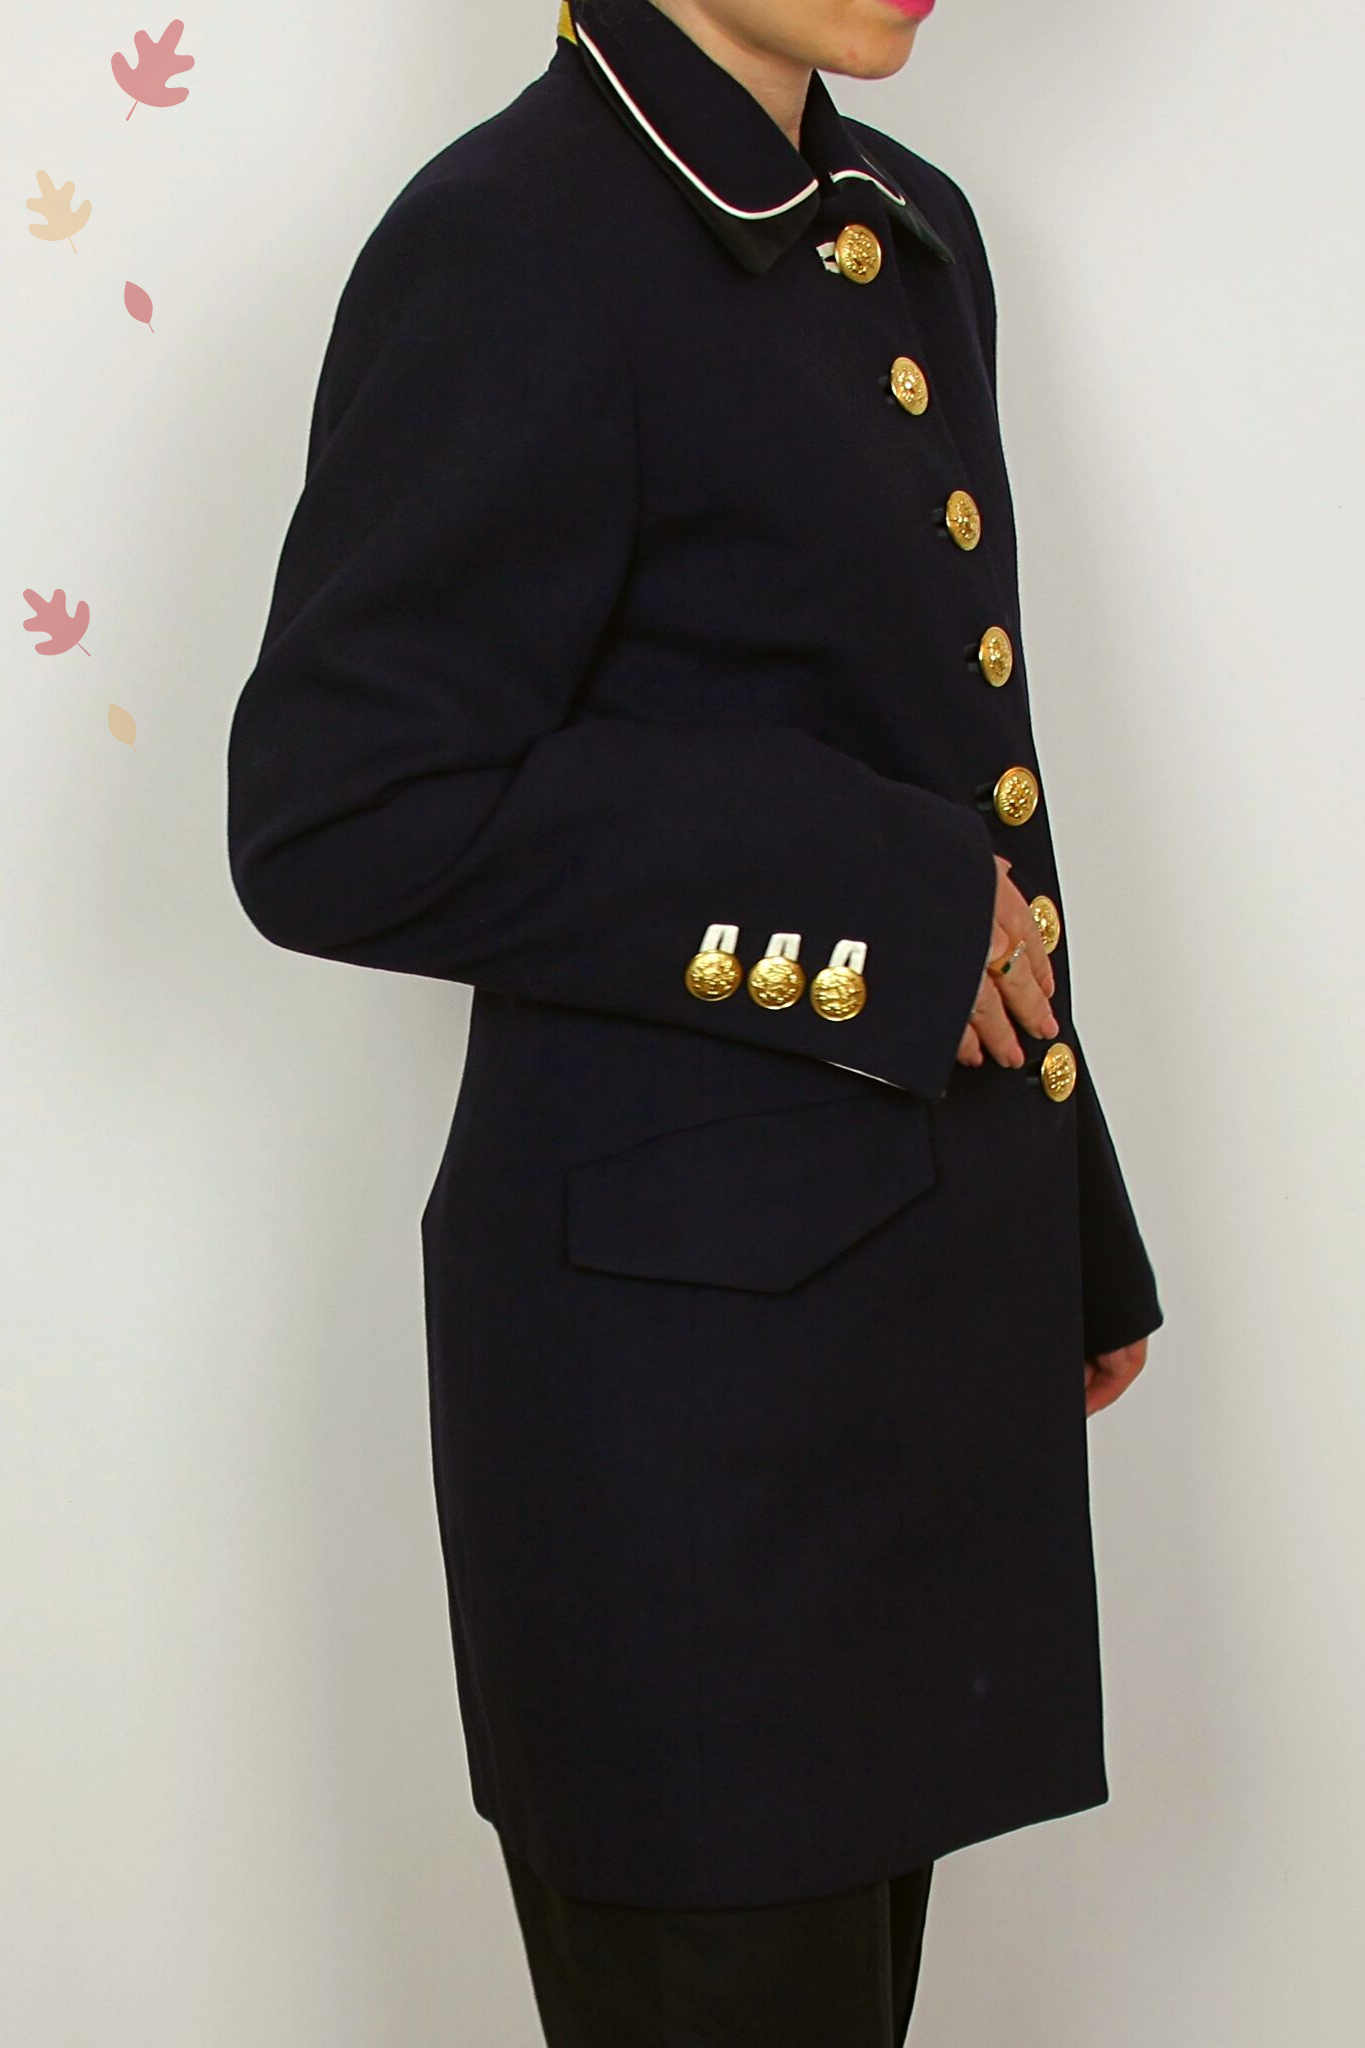 ERIC new york vintage navy blazer